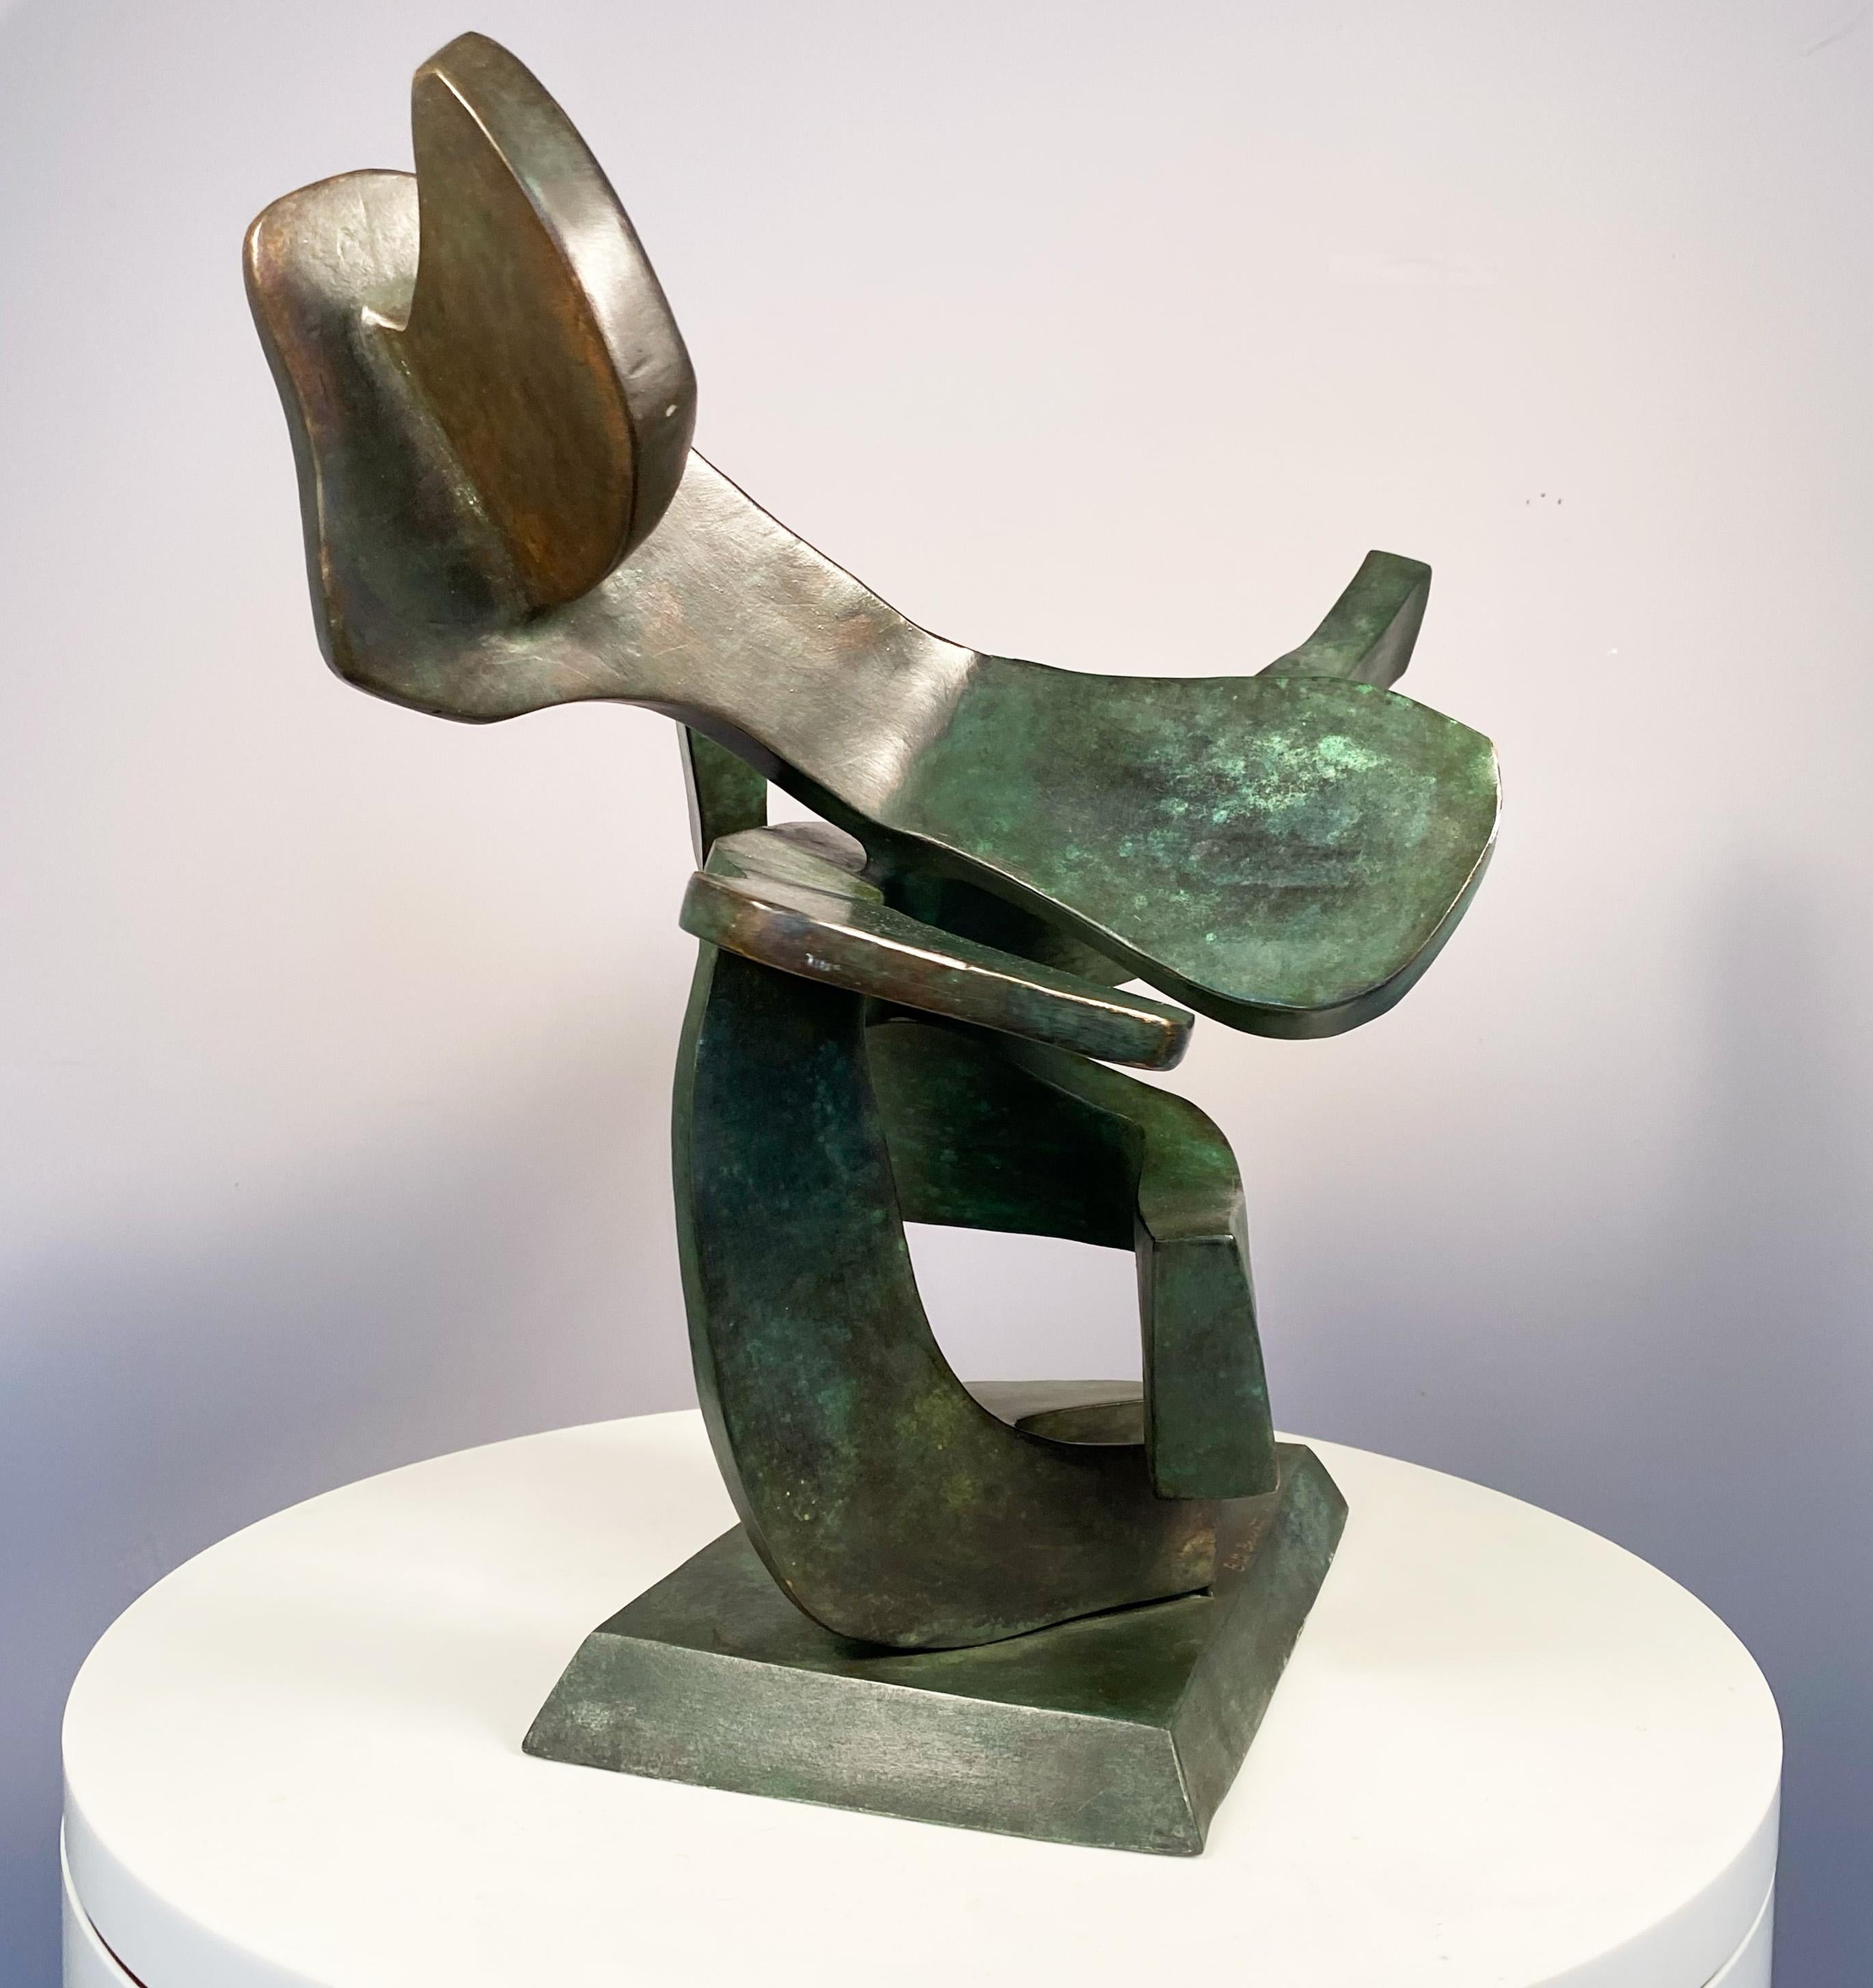 Barrett's Flight ist eine mittelgroße Skulptur, die auf einem Tisch, einer Konsole oder einem Couchtisch stehen kann.  Er kann auch auf einem Sockel platziert werden.  Wie sein Titel schon sagt, bringt er Bewegung in den Raum. Erinnert ein wenig an